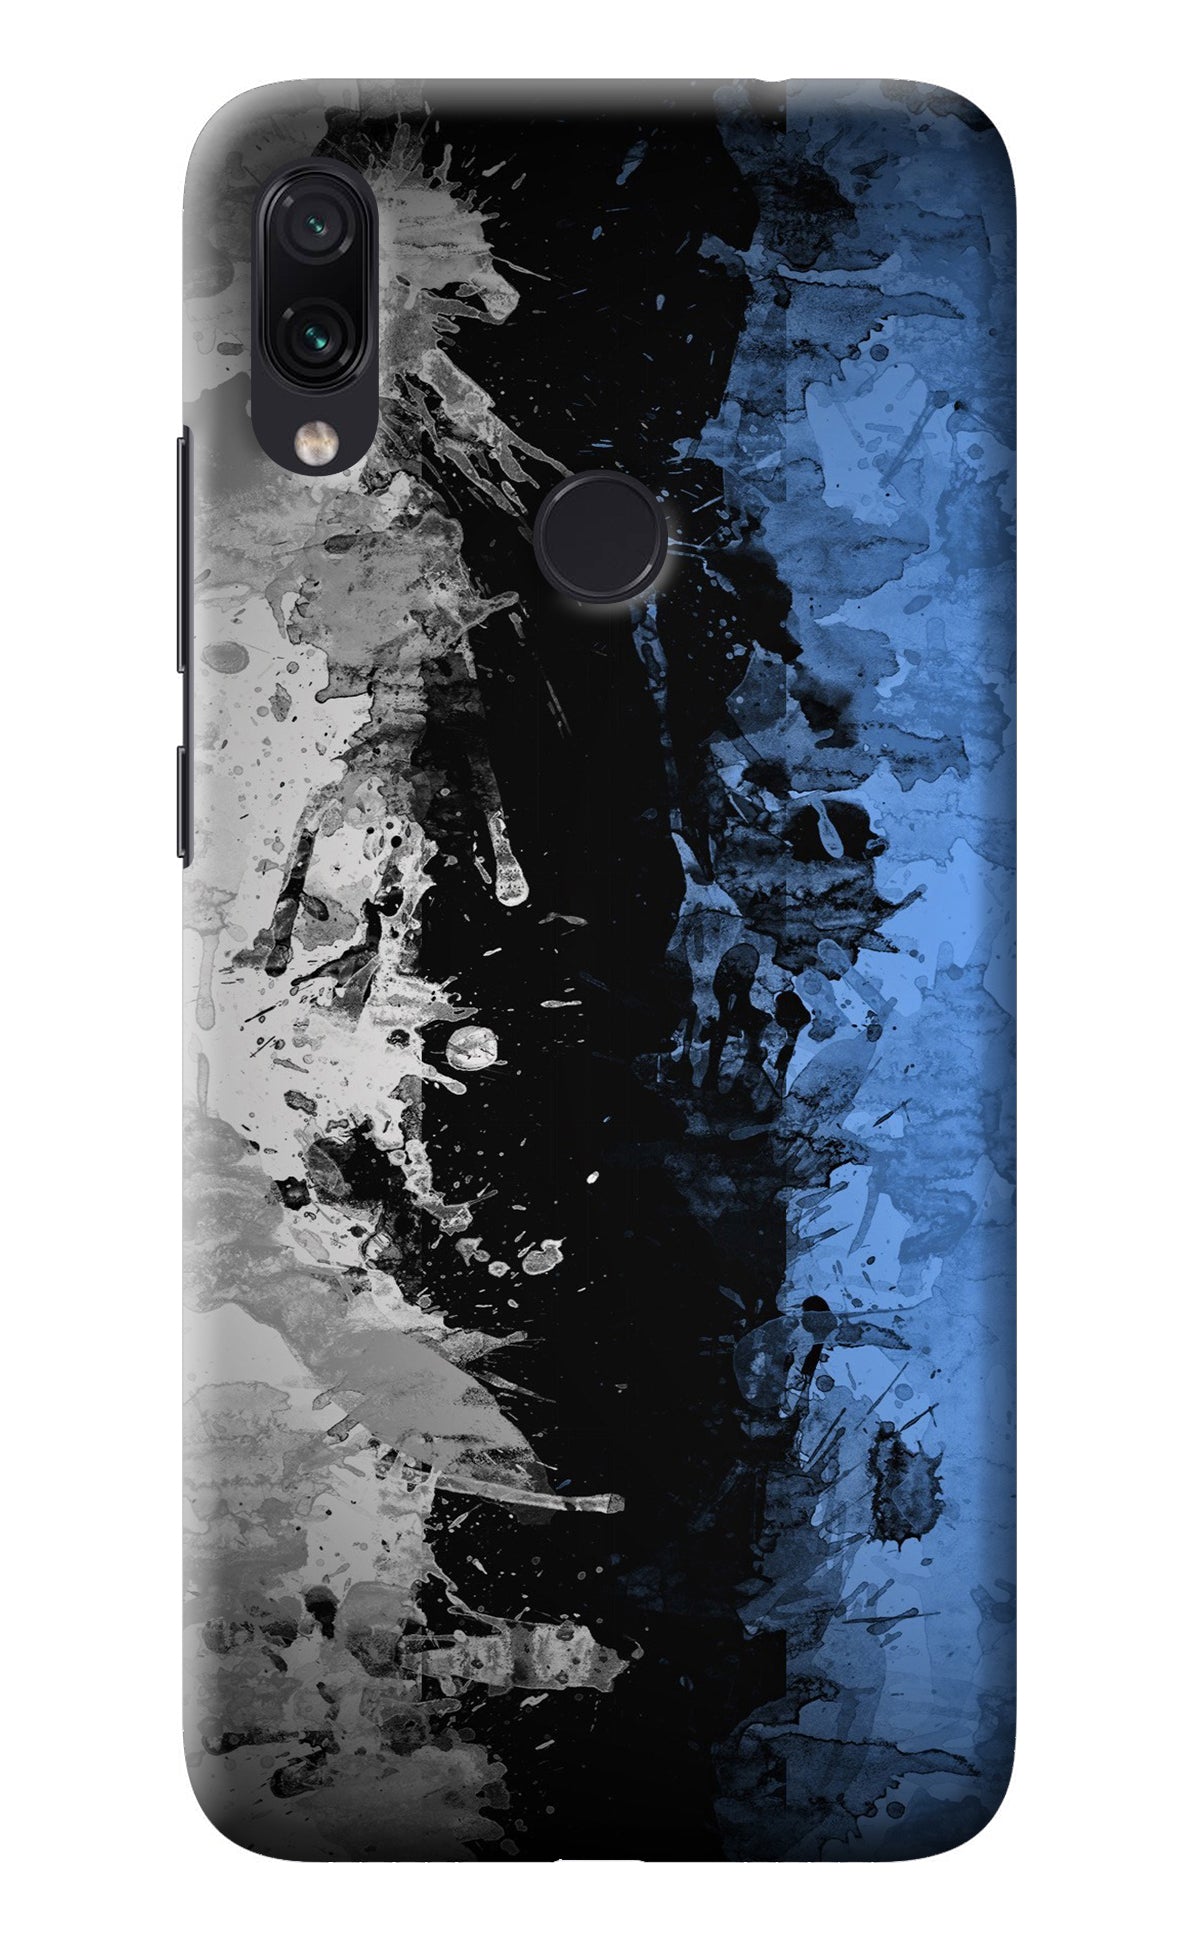 Artistic Design Redmi Note 7 Pro Back Cover